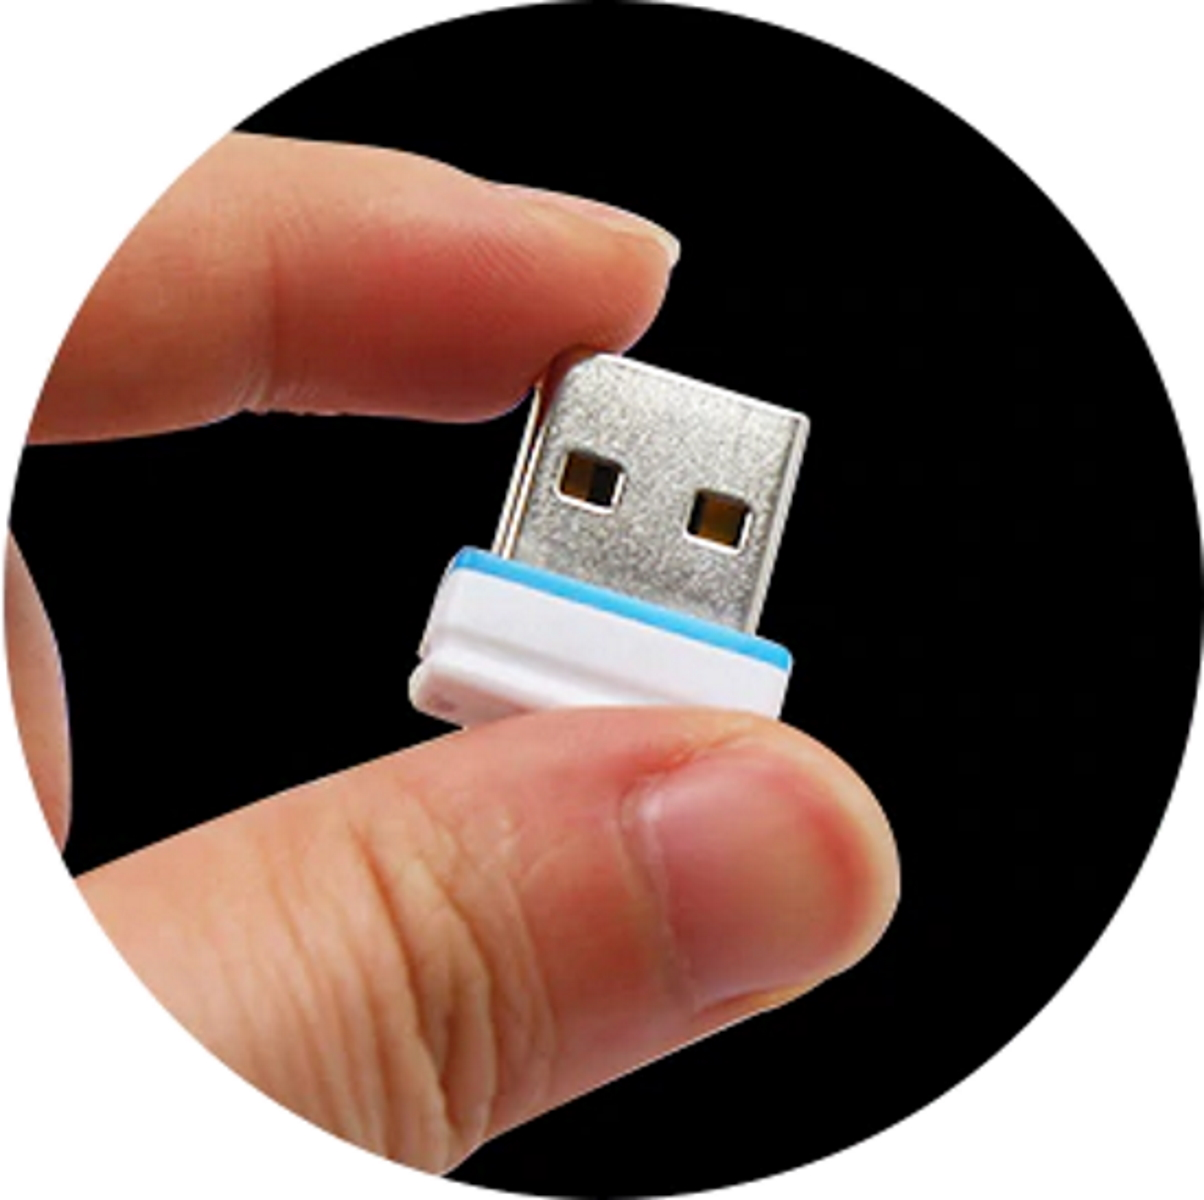 (Weiß, P1 USB 2 USB-Stick GERMANY GB) ®ULTRA Mini